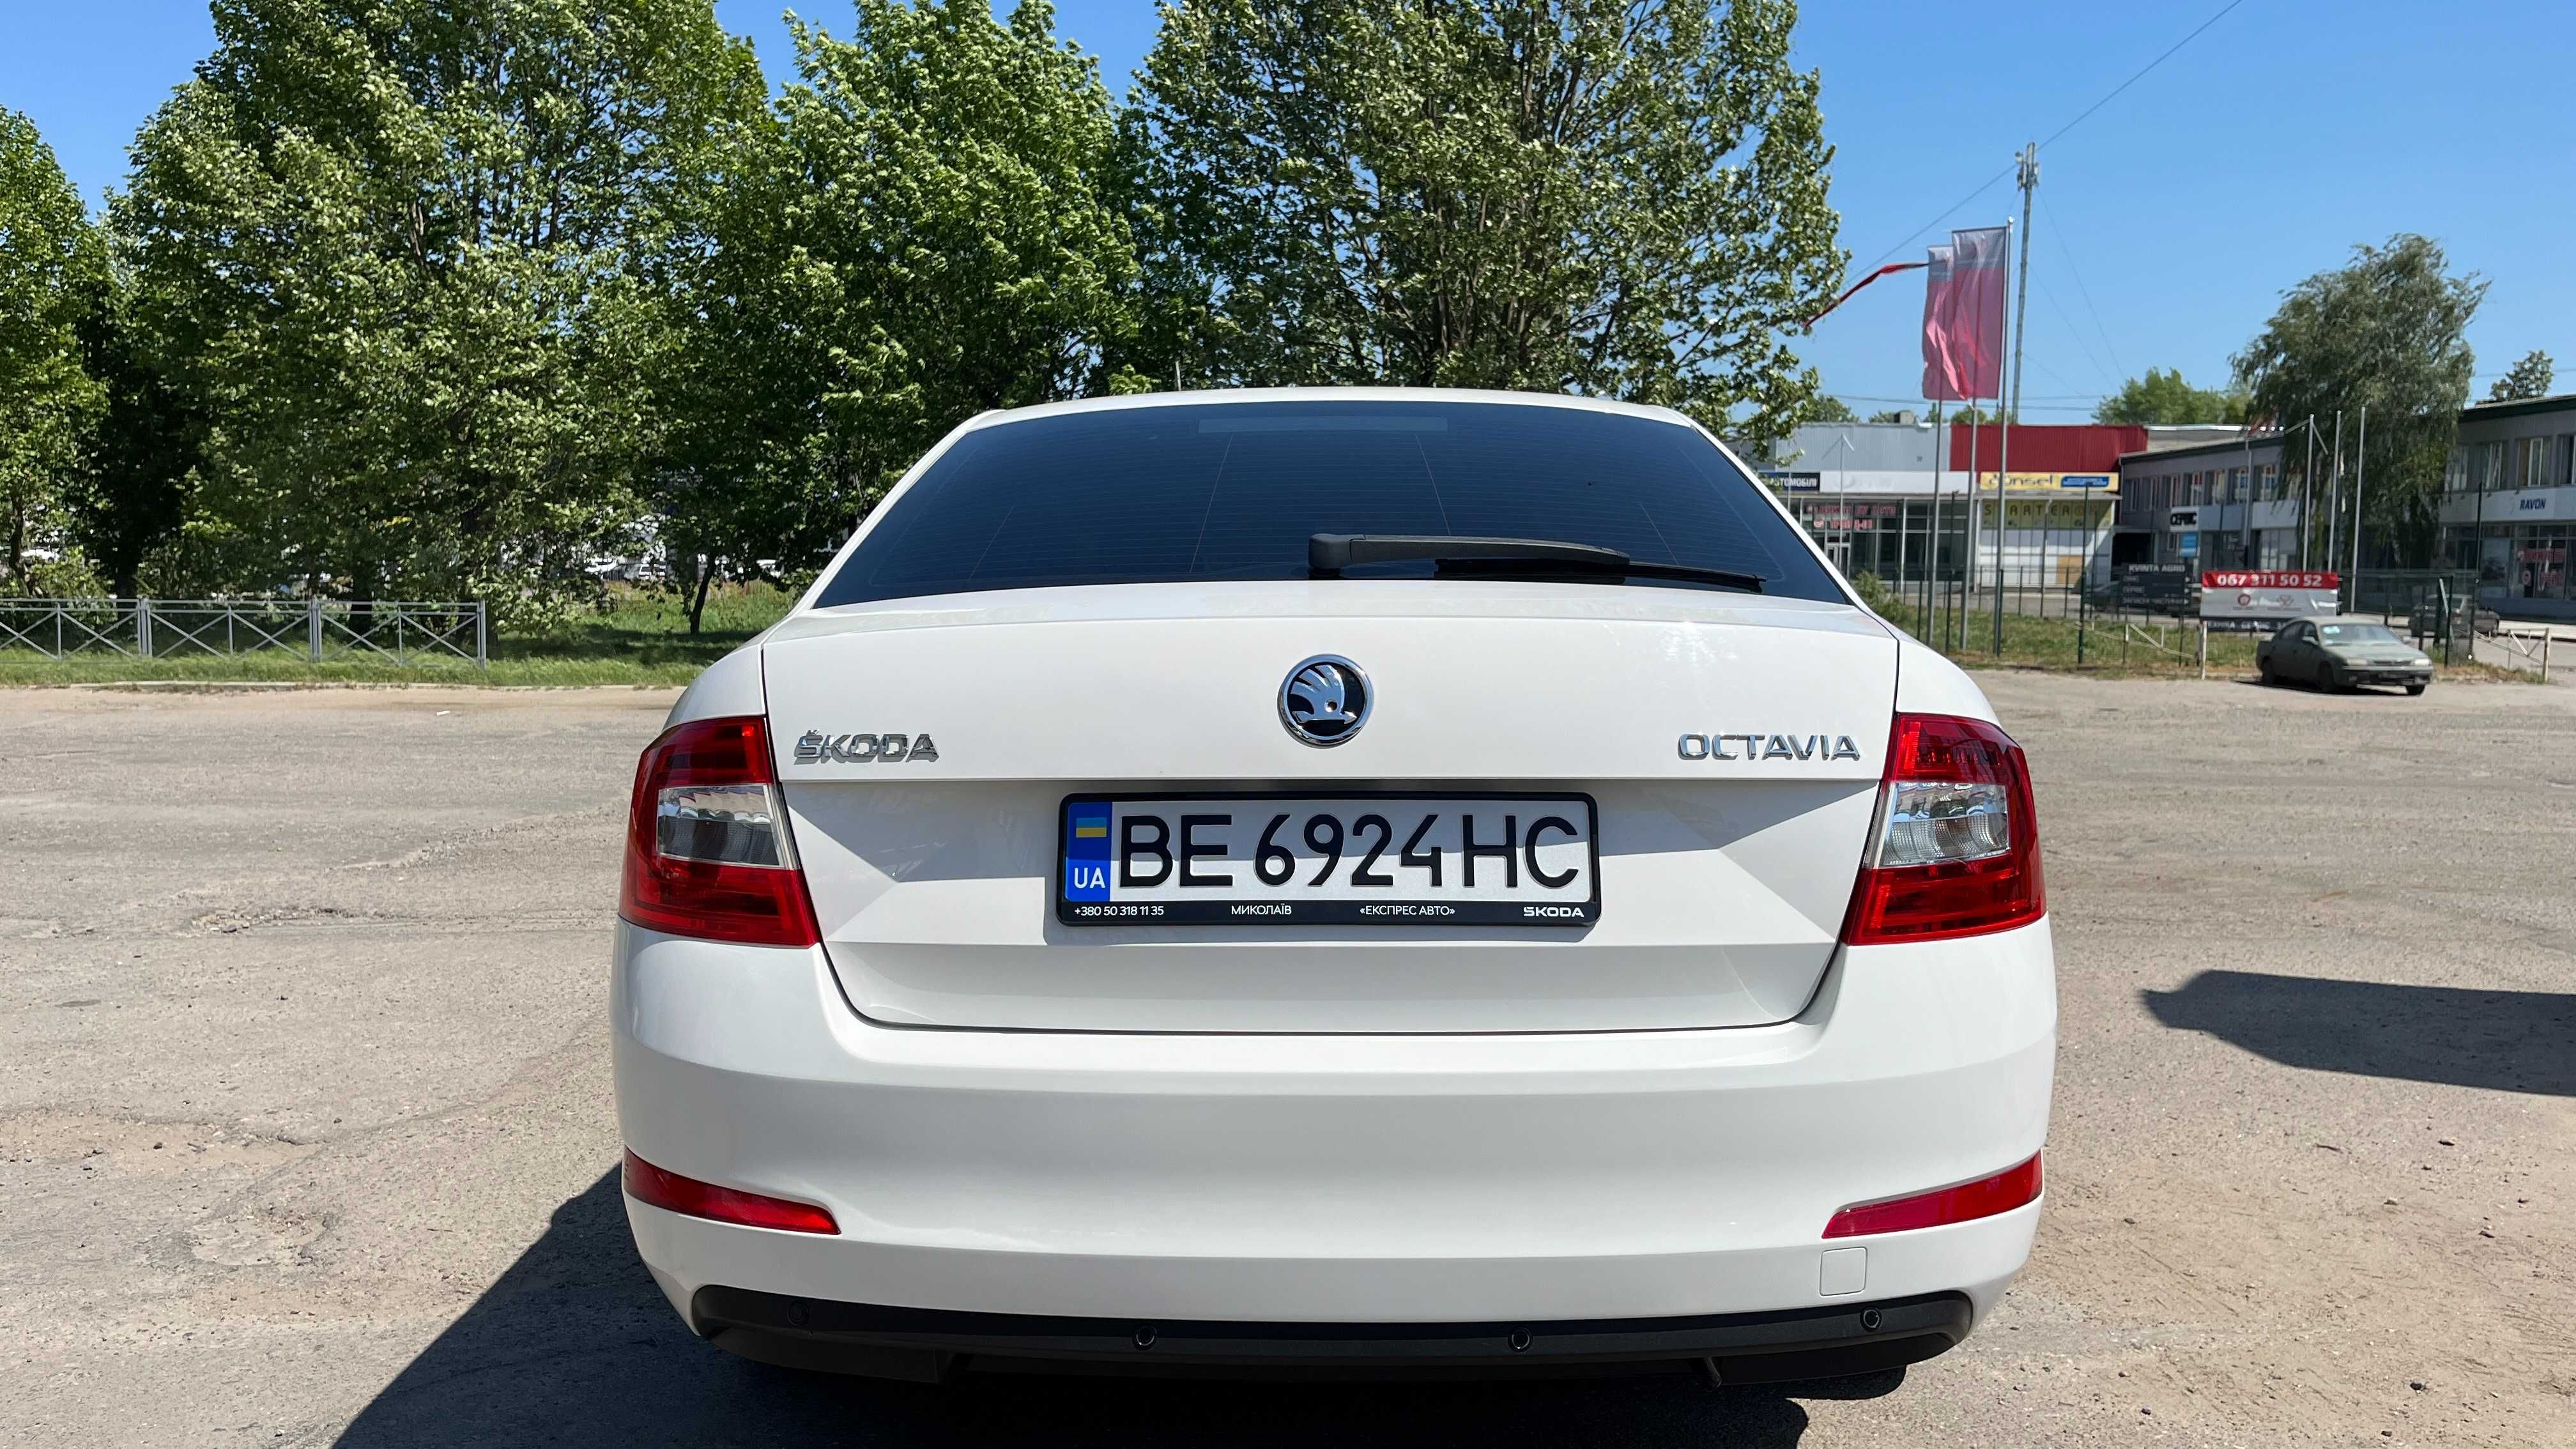 Терміново продам автомобіль Skoda Octavia A7 Oficial , 2017 г.